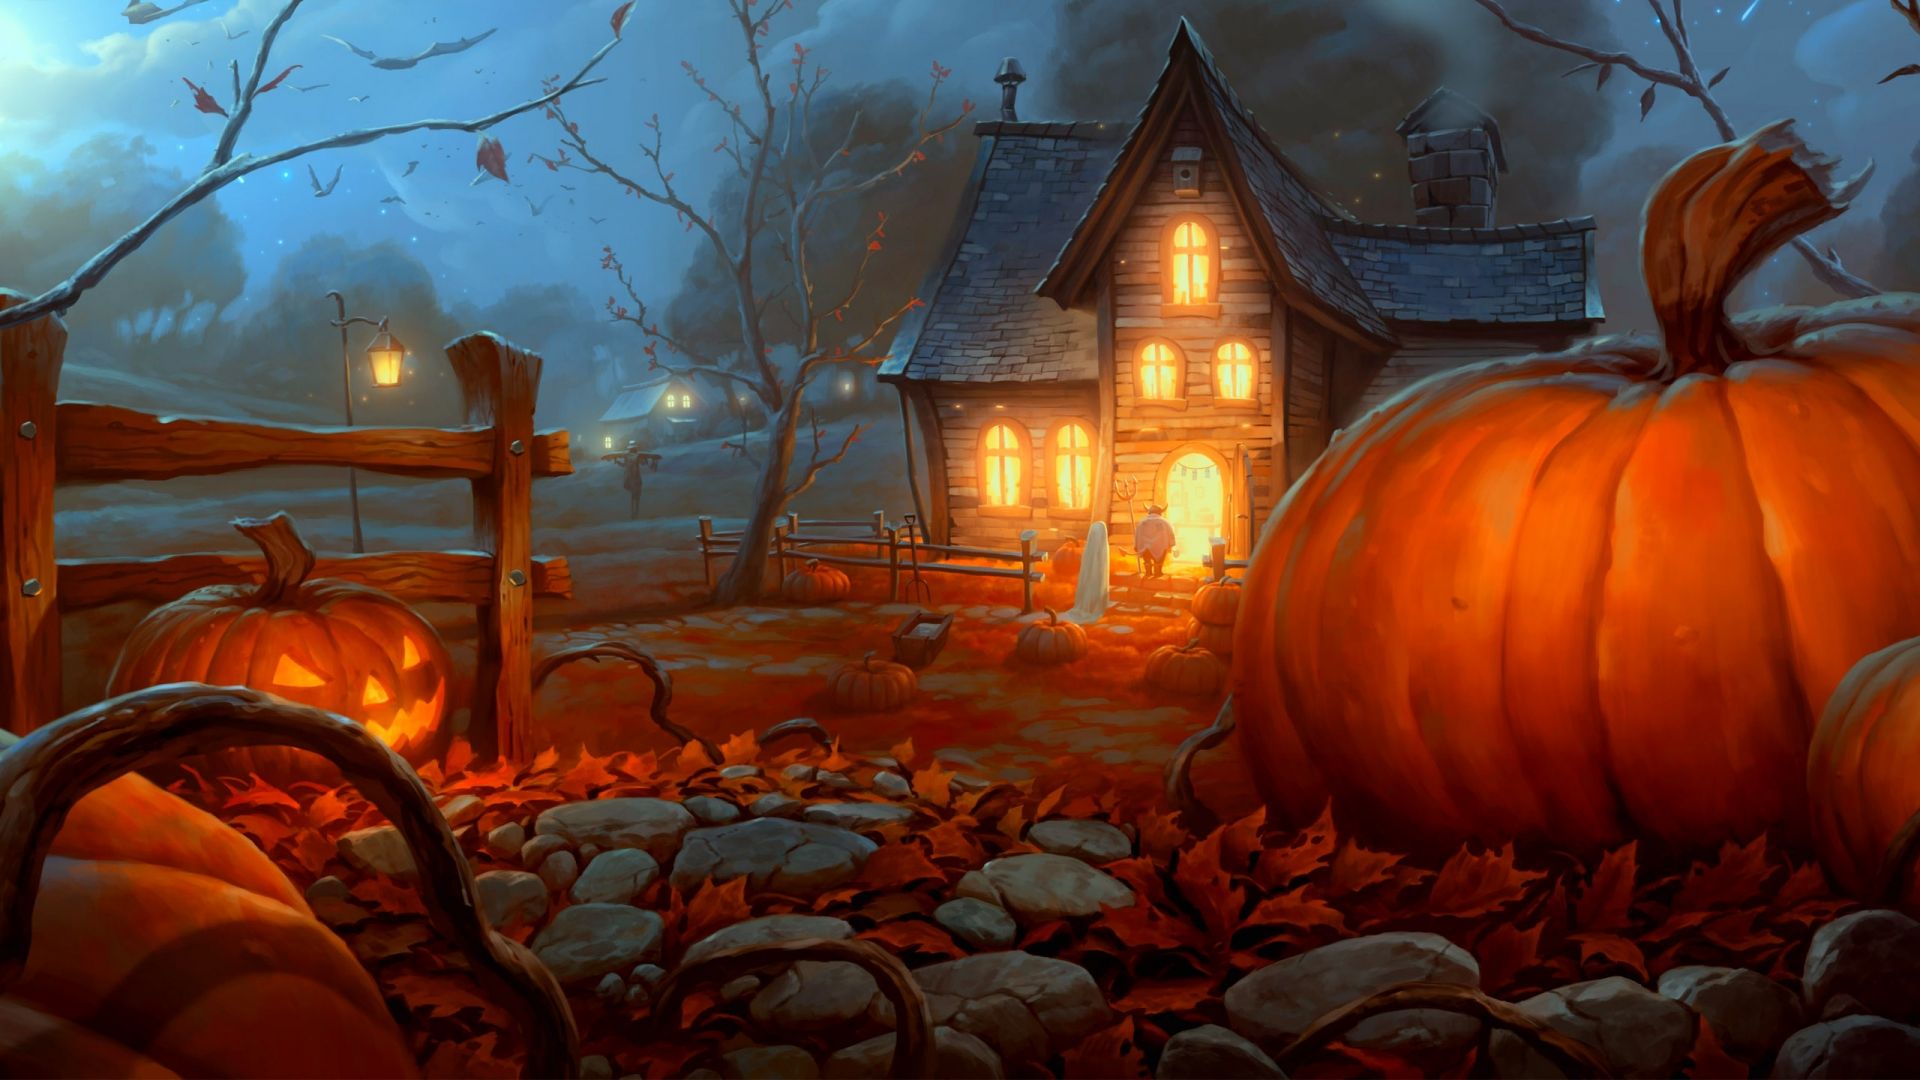 Hàng trăm hình nền Halloween đẹp mắt với chủ đề đáng sợ, bí ẩn và đầy sức thu hút vẫn đang chờ đón bạn! Tận hưởng không khí đầy ma mị này với những hình nền Halloween đẹp mắt.